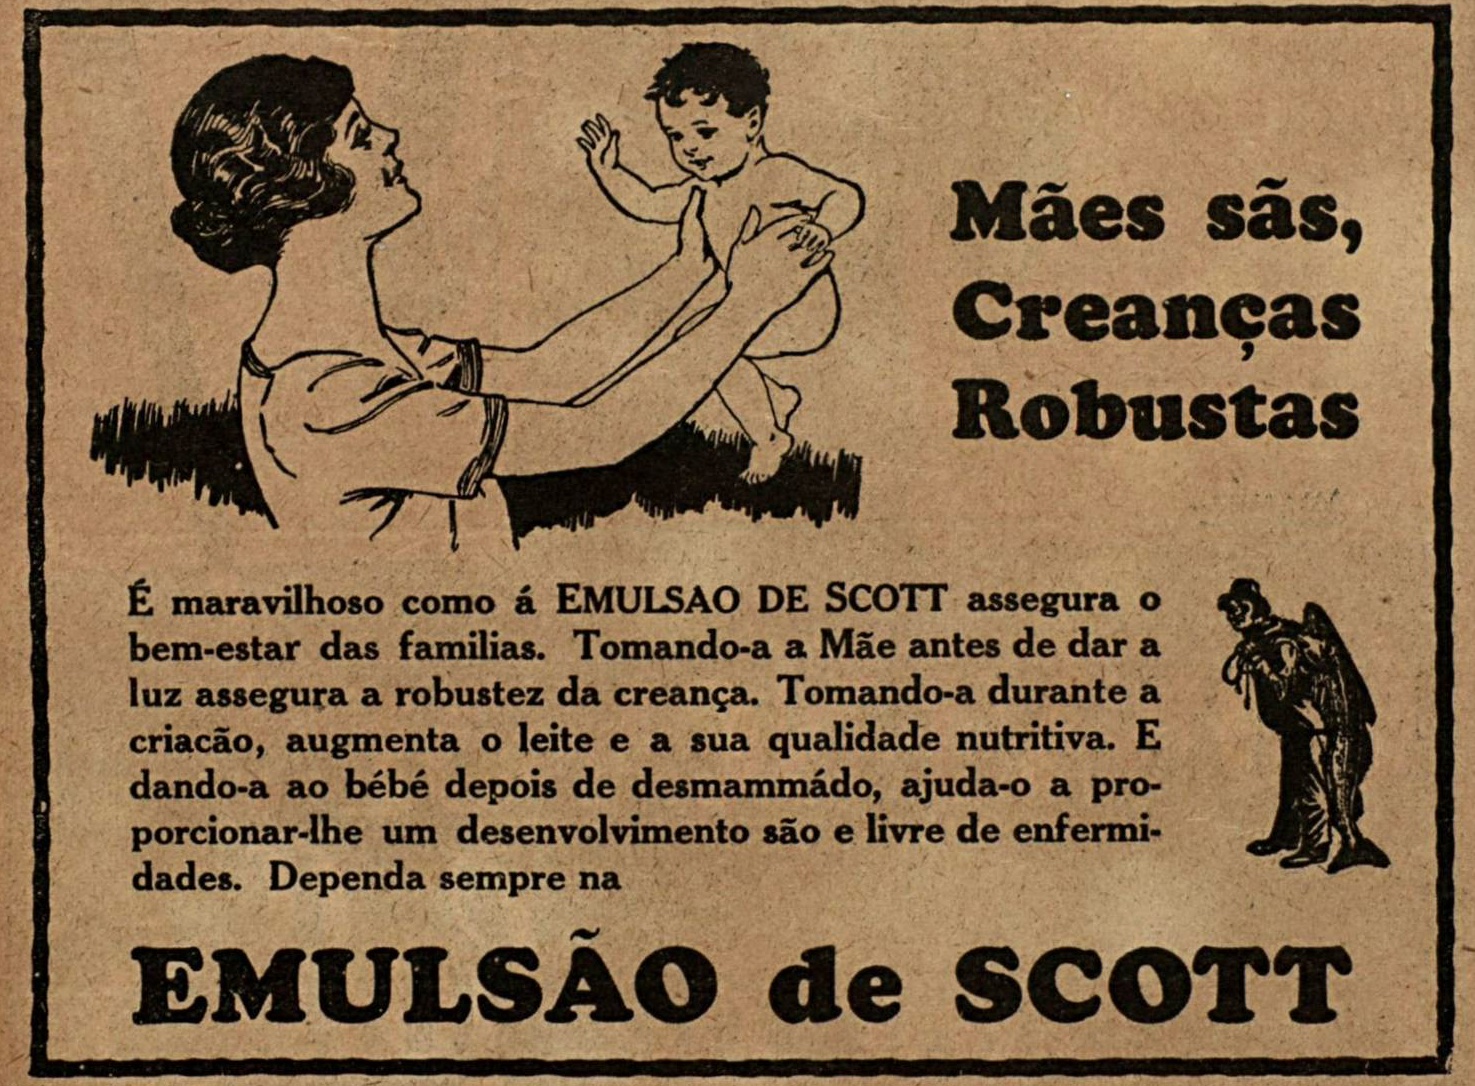 Campanha veiculada em 1926 promovendo os benefícios do Emulsão de Scott.